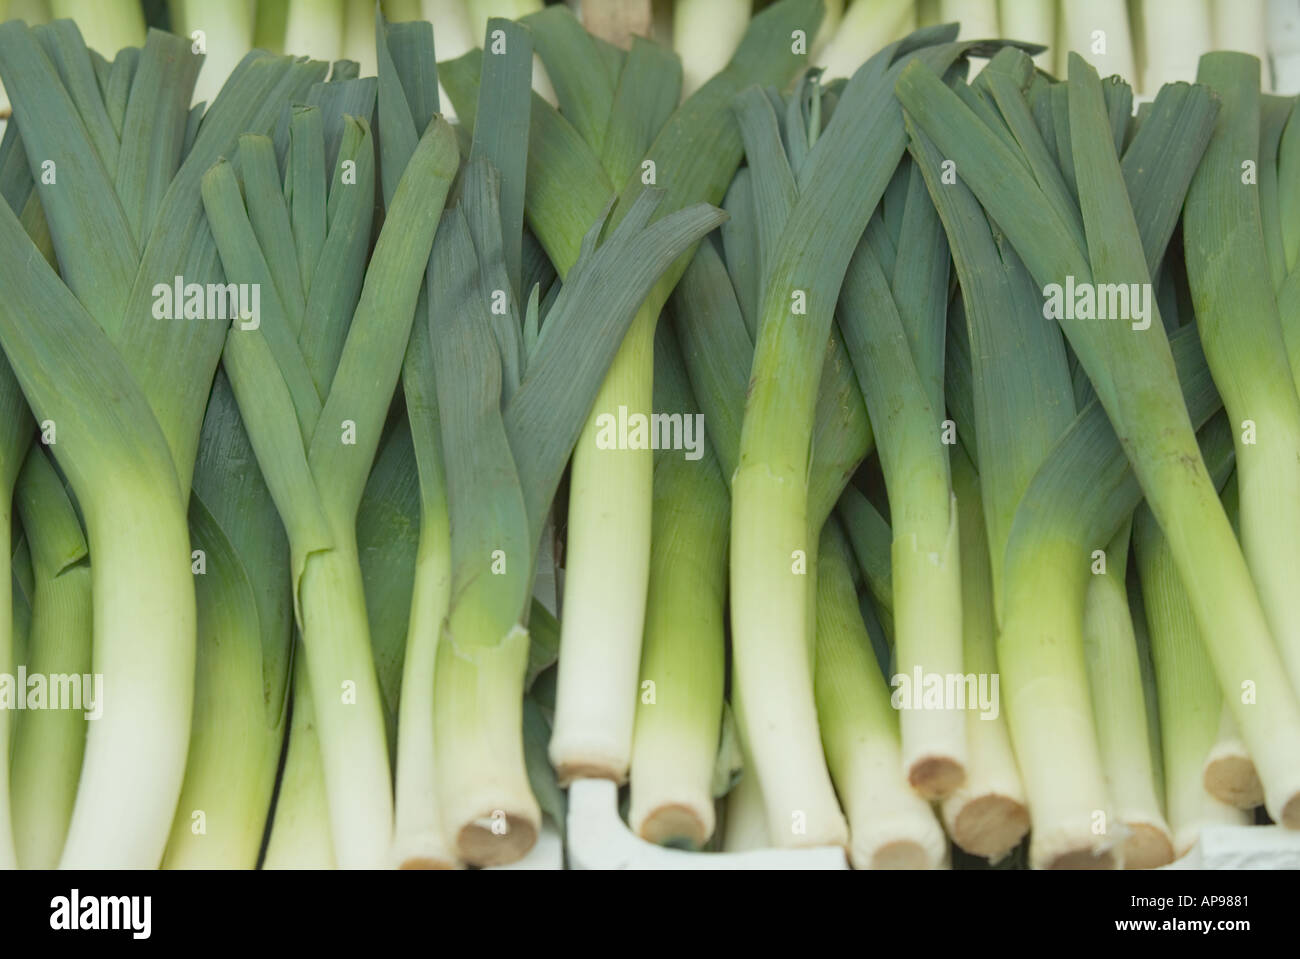 frische Lecks grünen Gemüse walisische Nationalpflanze Stockfotografie -  Alamy